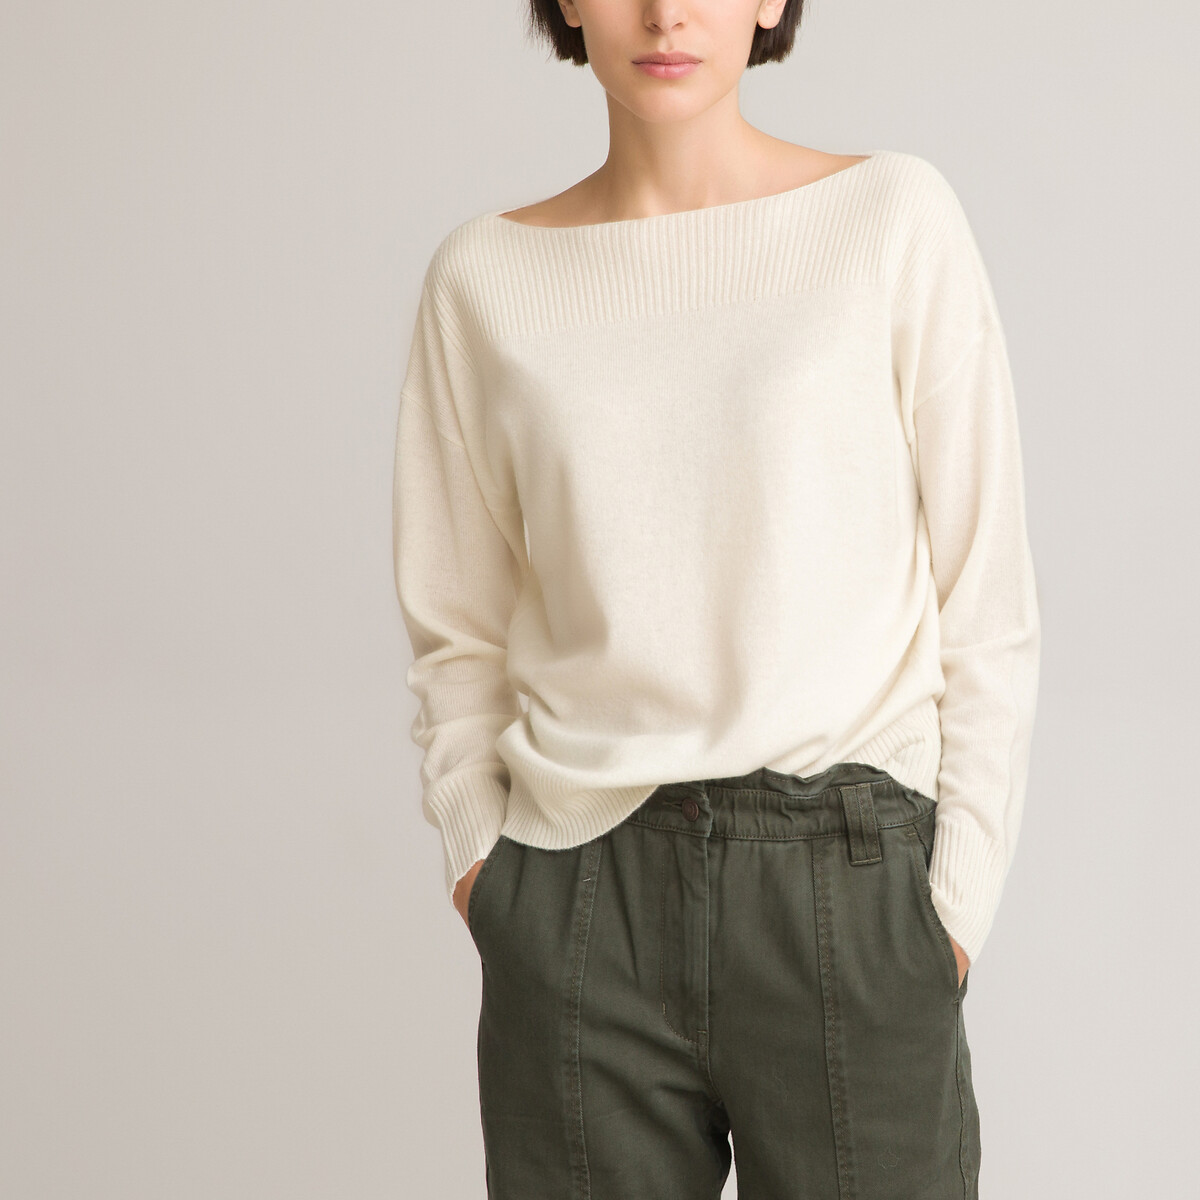 Пуловер С вырезом-лодочкой из кашемира тонкий трикотаж M белый